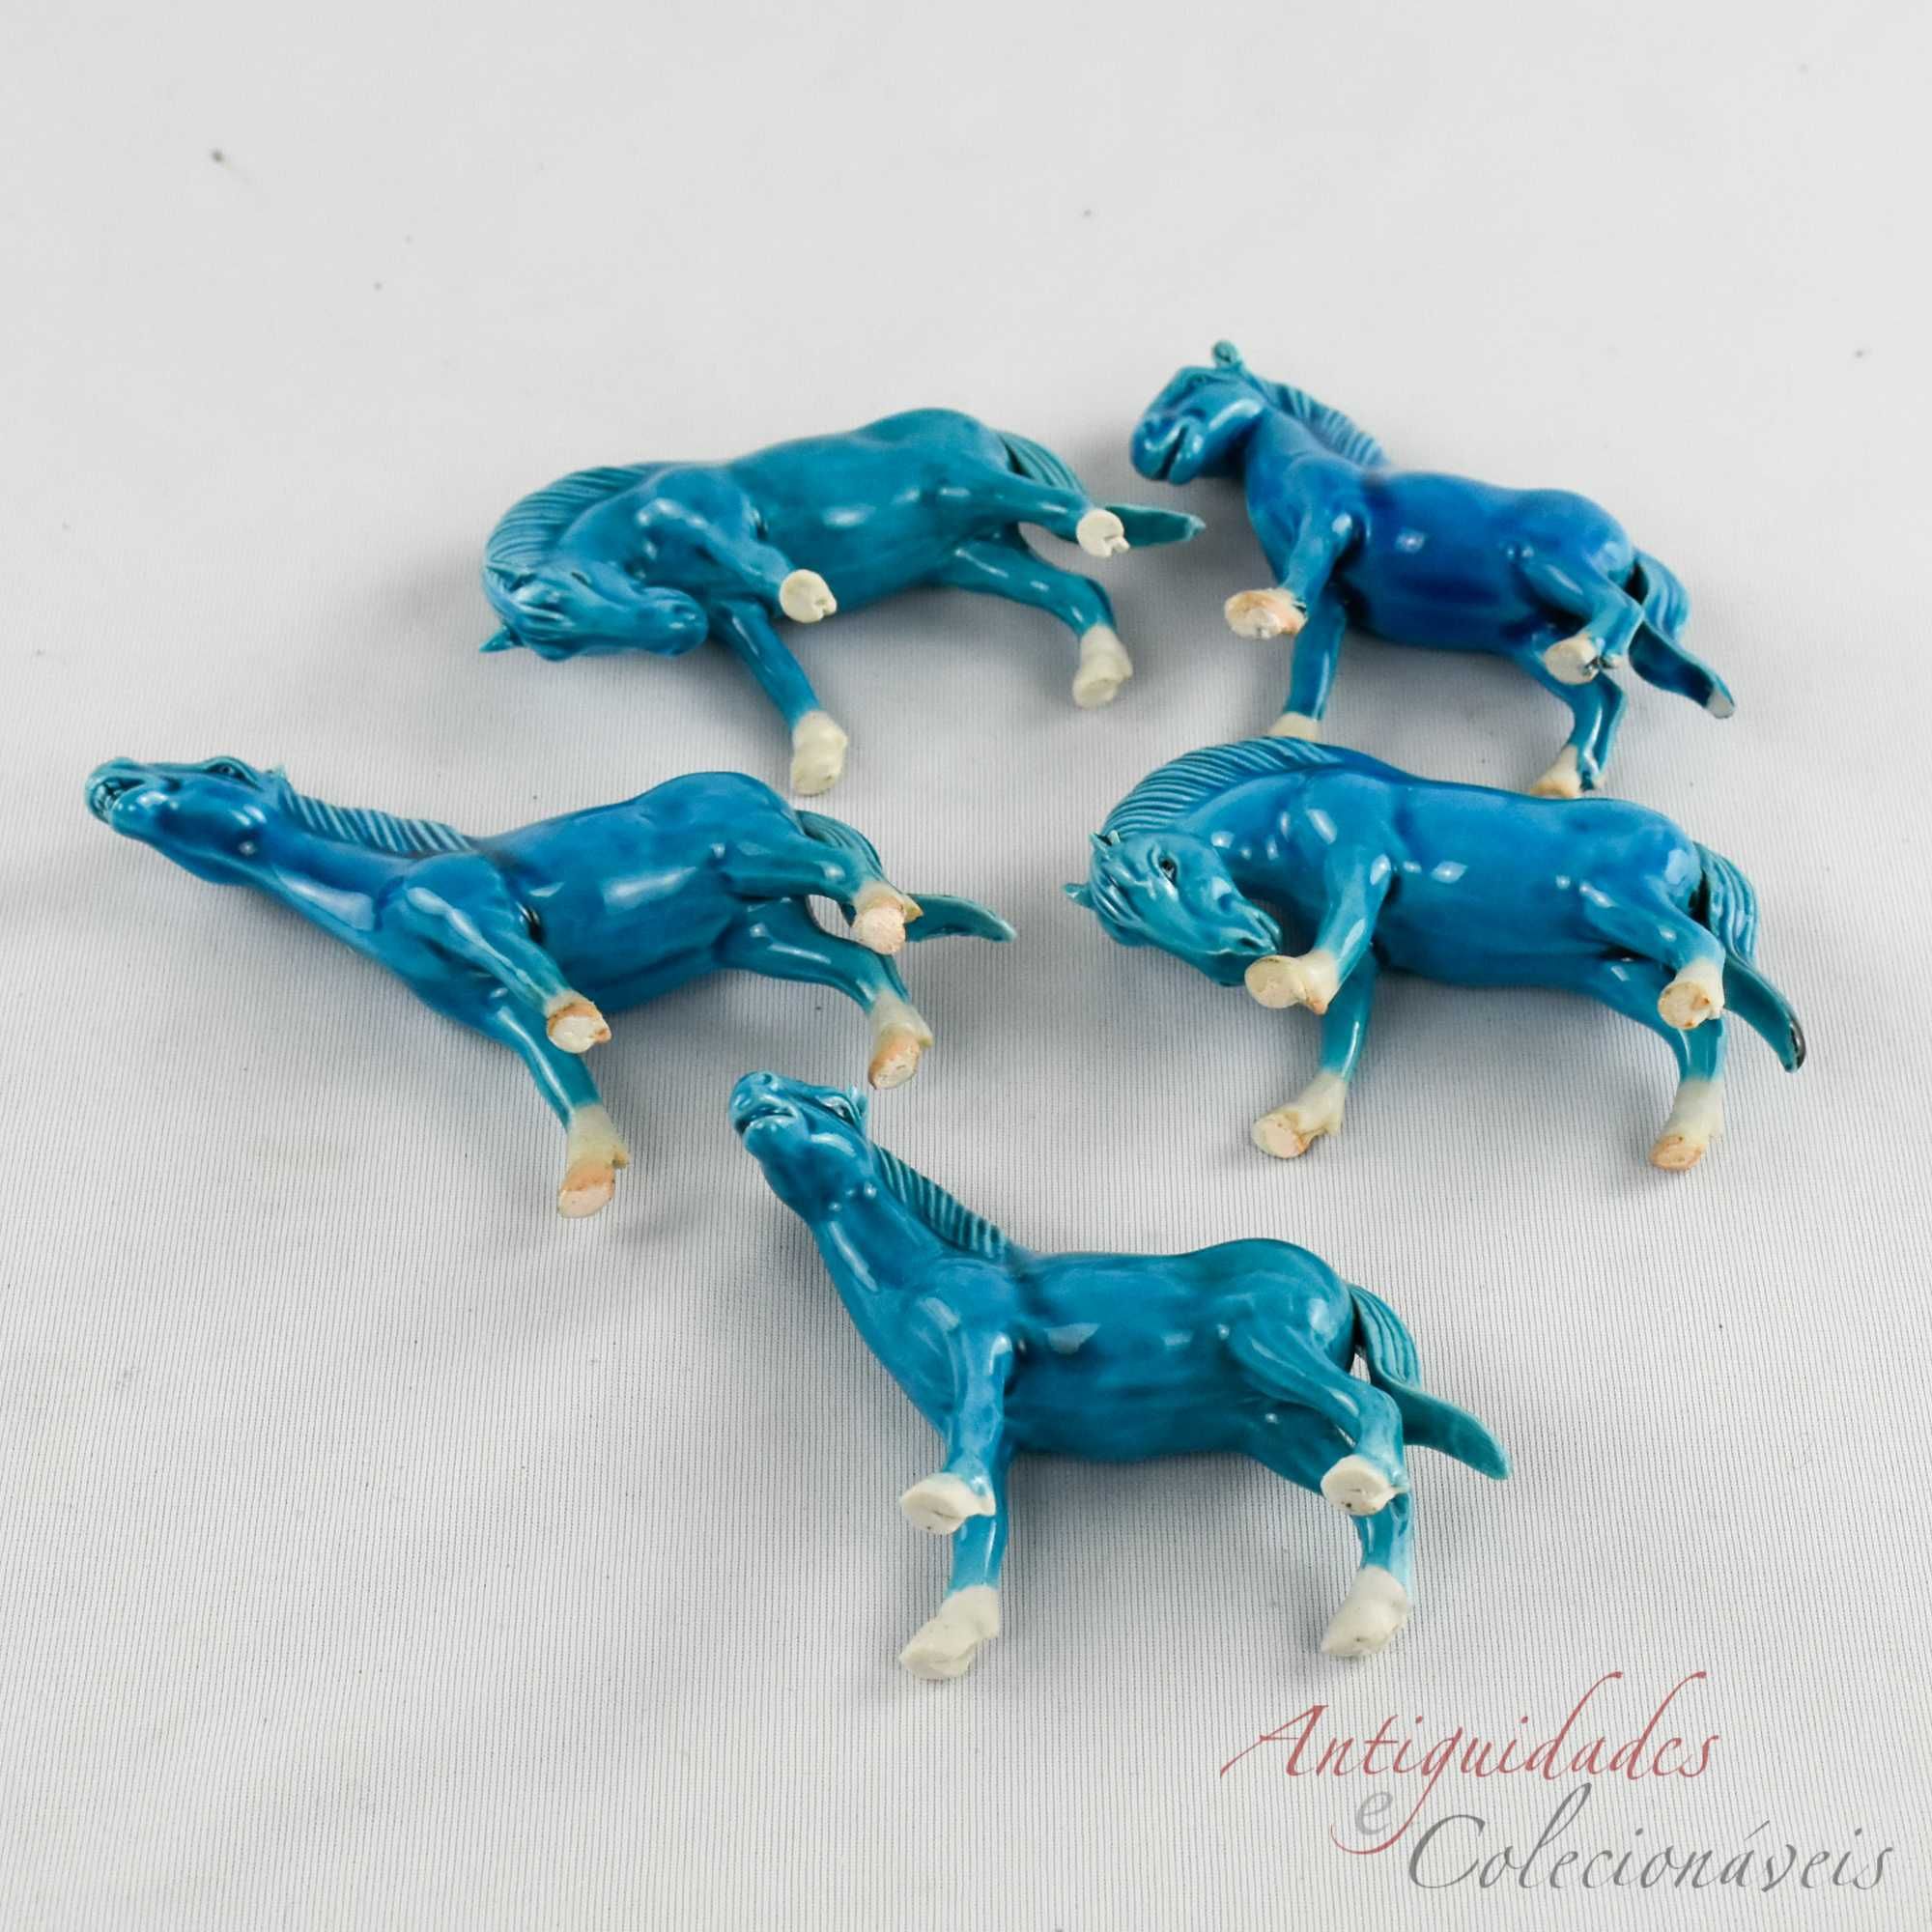 Conjunto de 5 cavalos porcelana da China em Azul-Turquesa